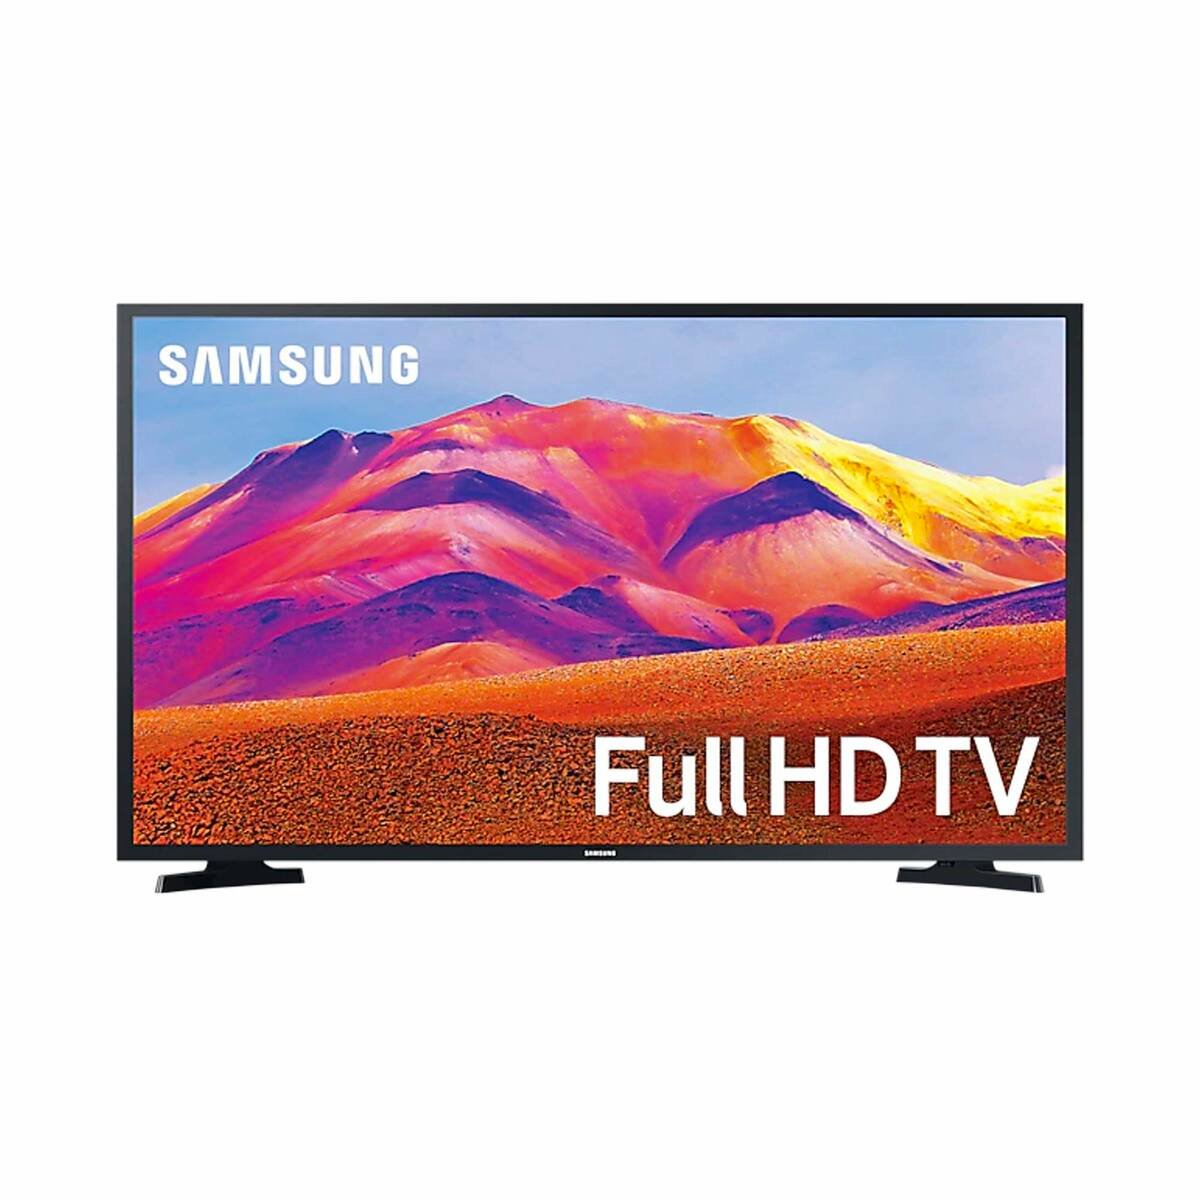 Samsung Smart LED TV 40 inch UA40T5300